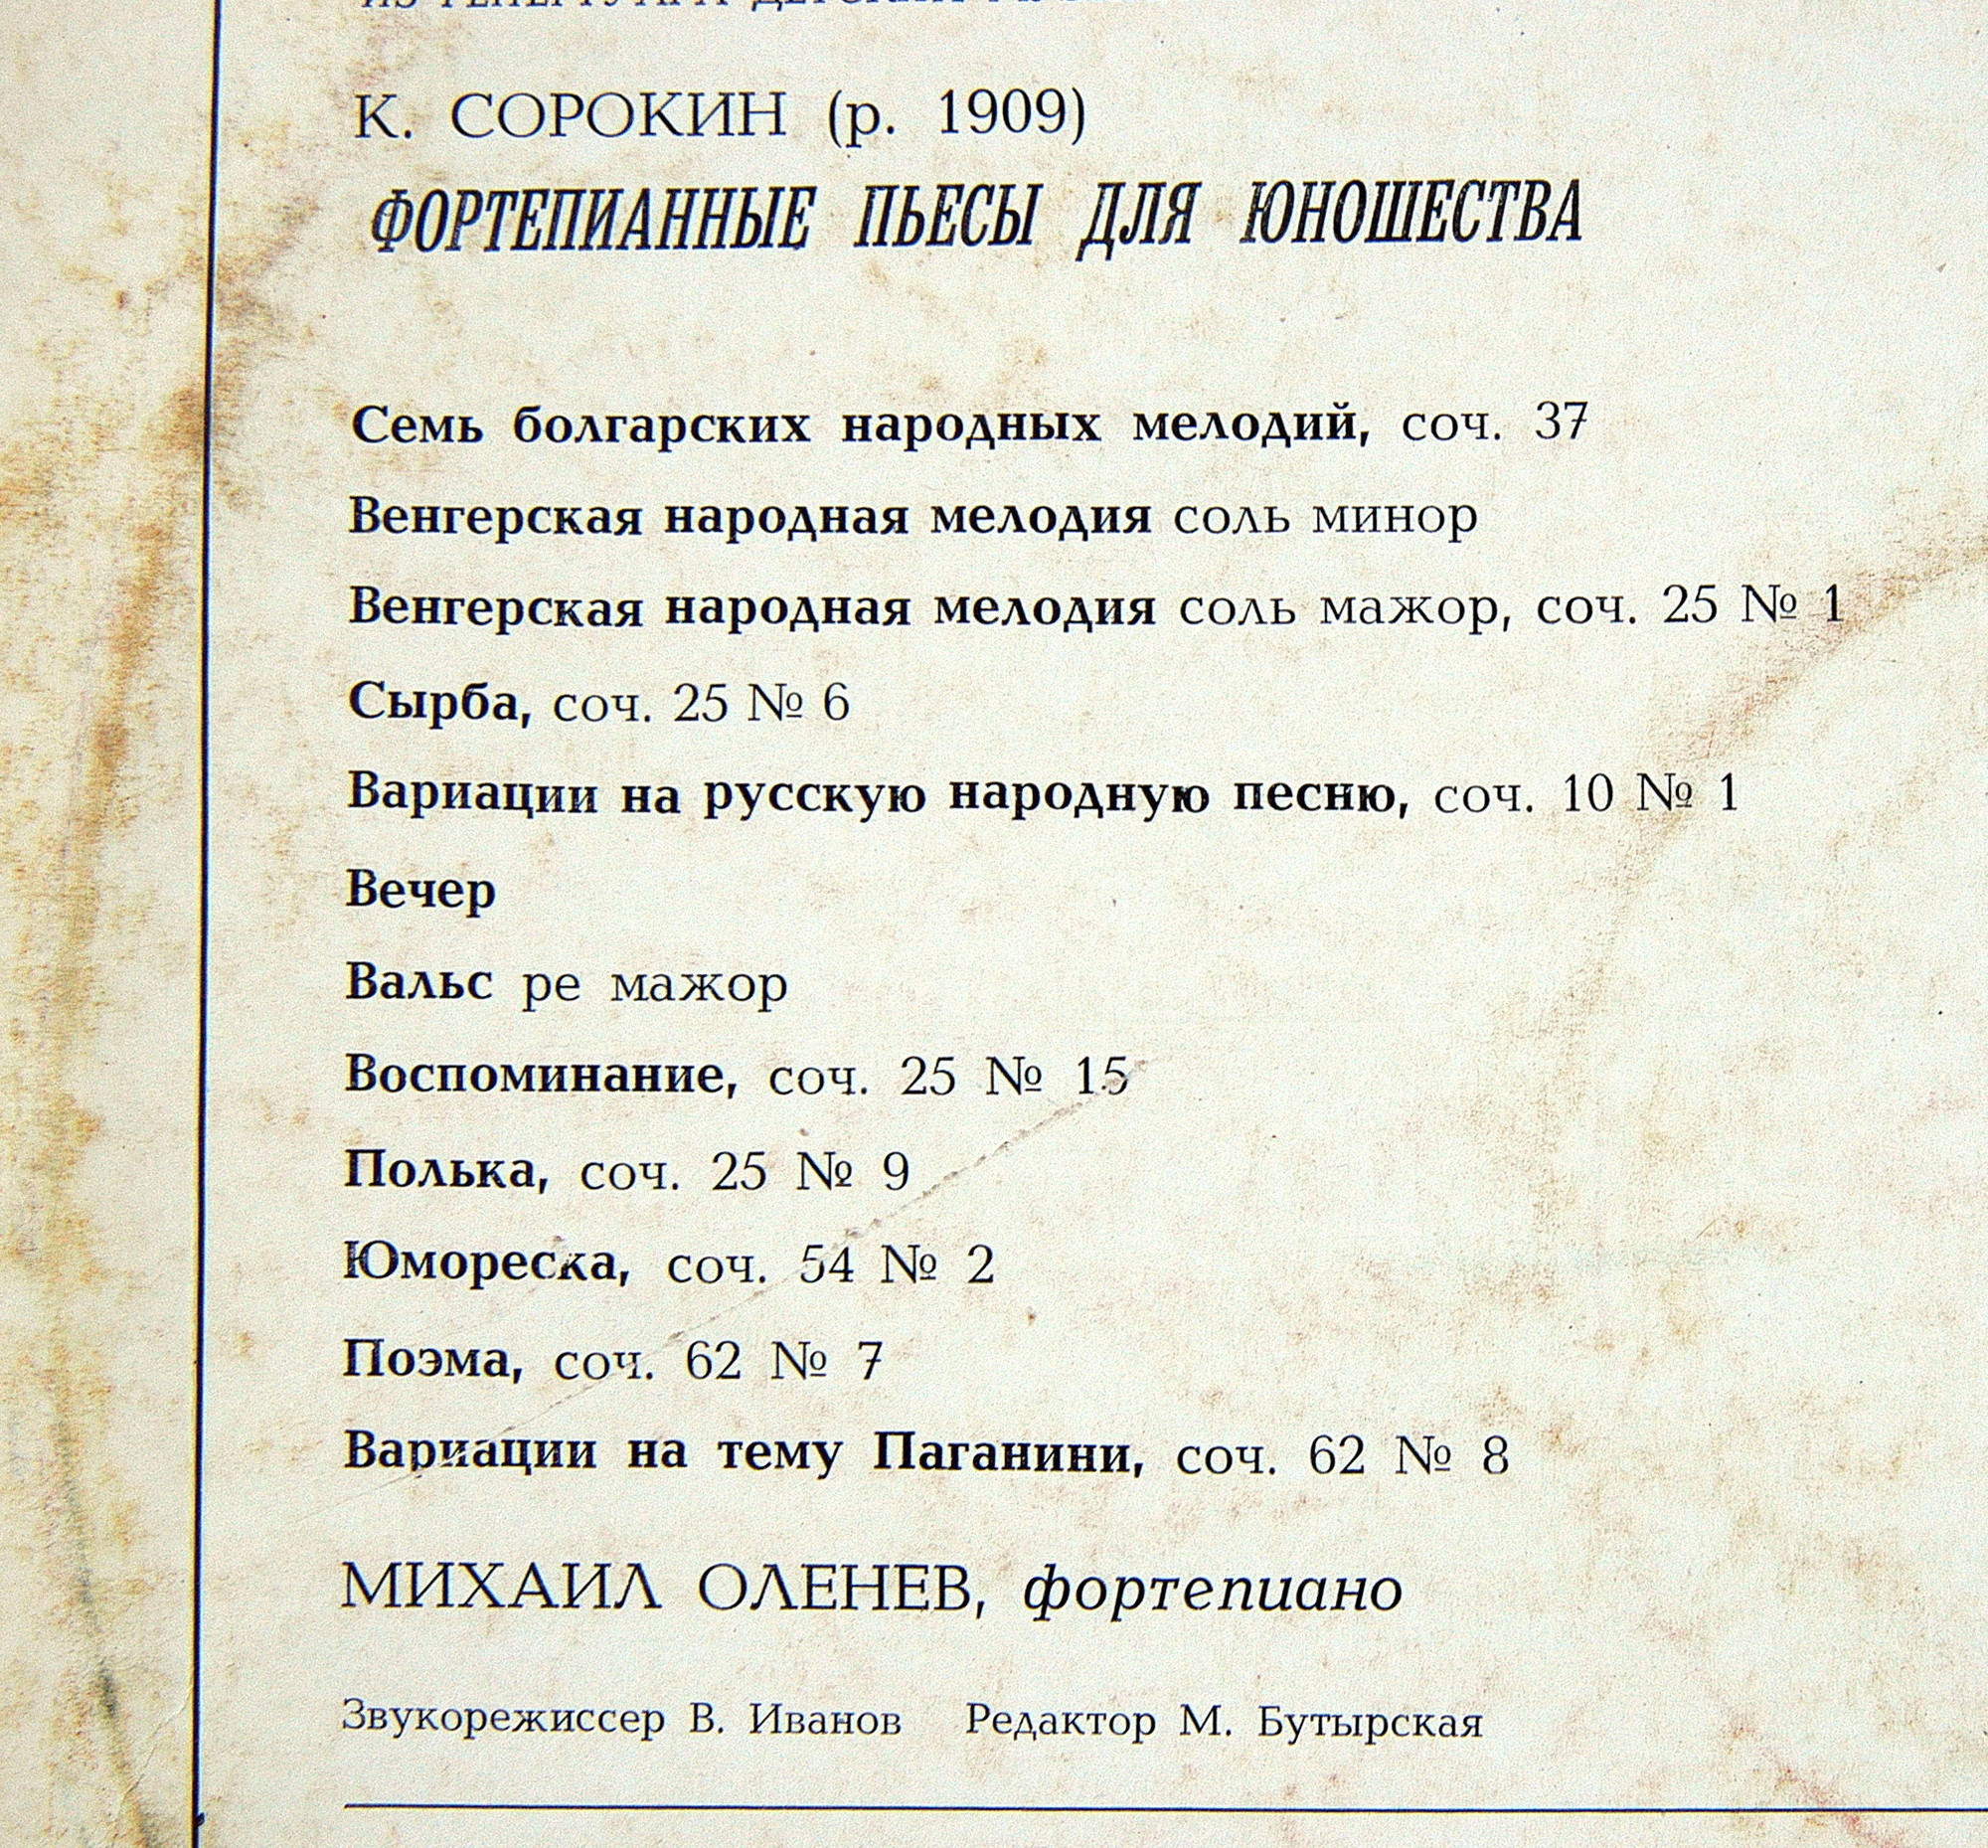 К. СОРОКИН (1909): Фортепианные пьесы для юношества